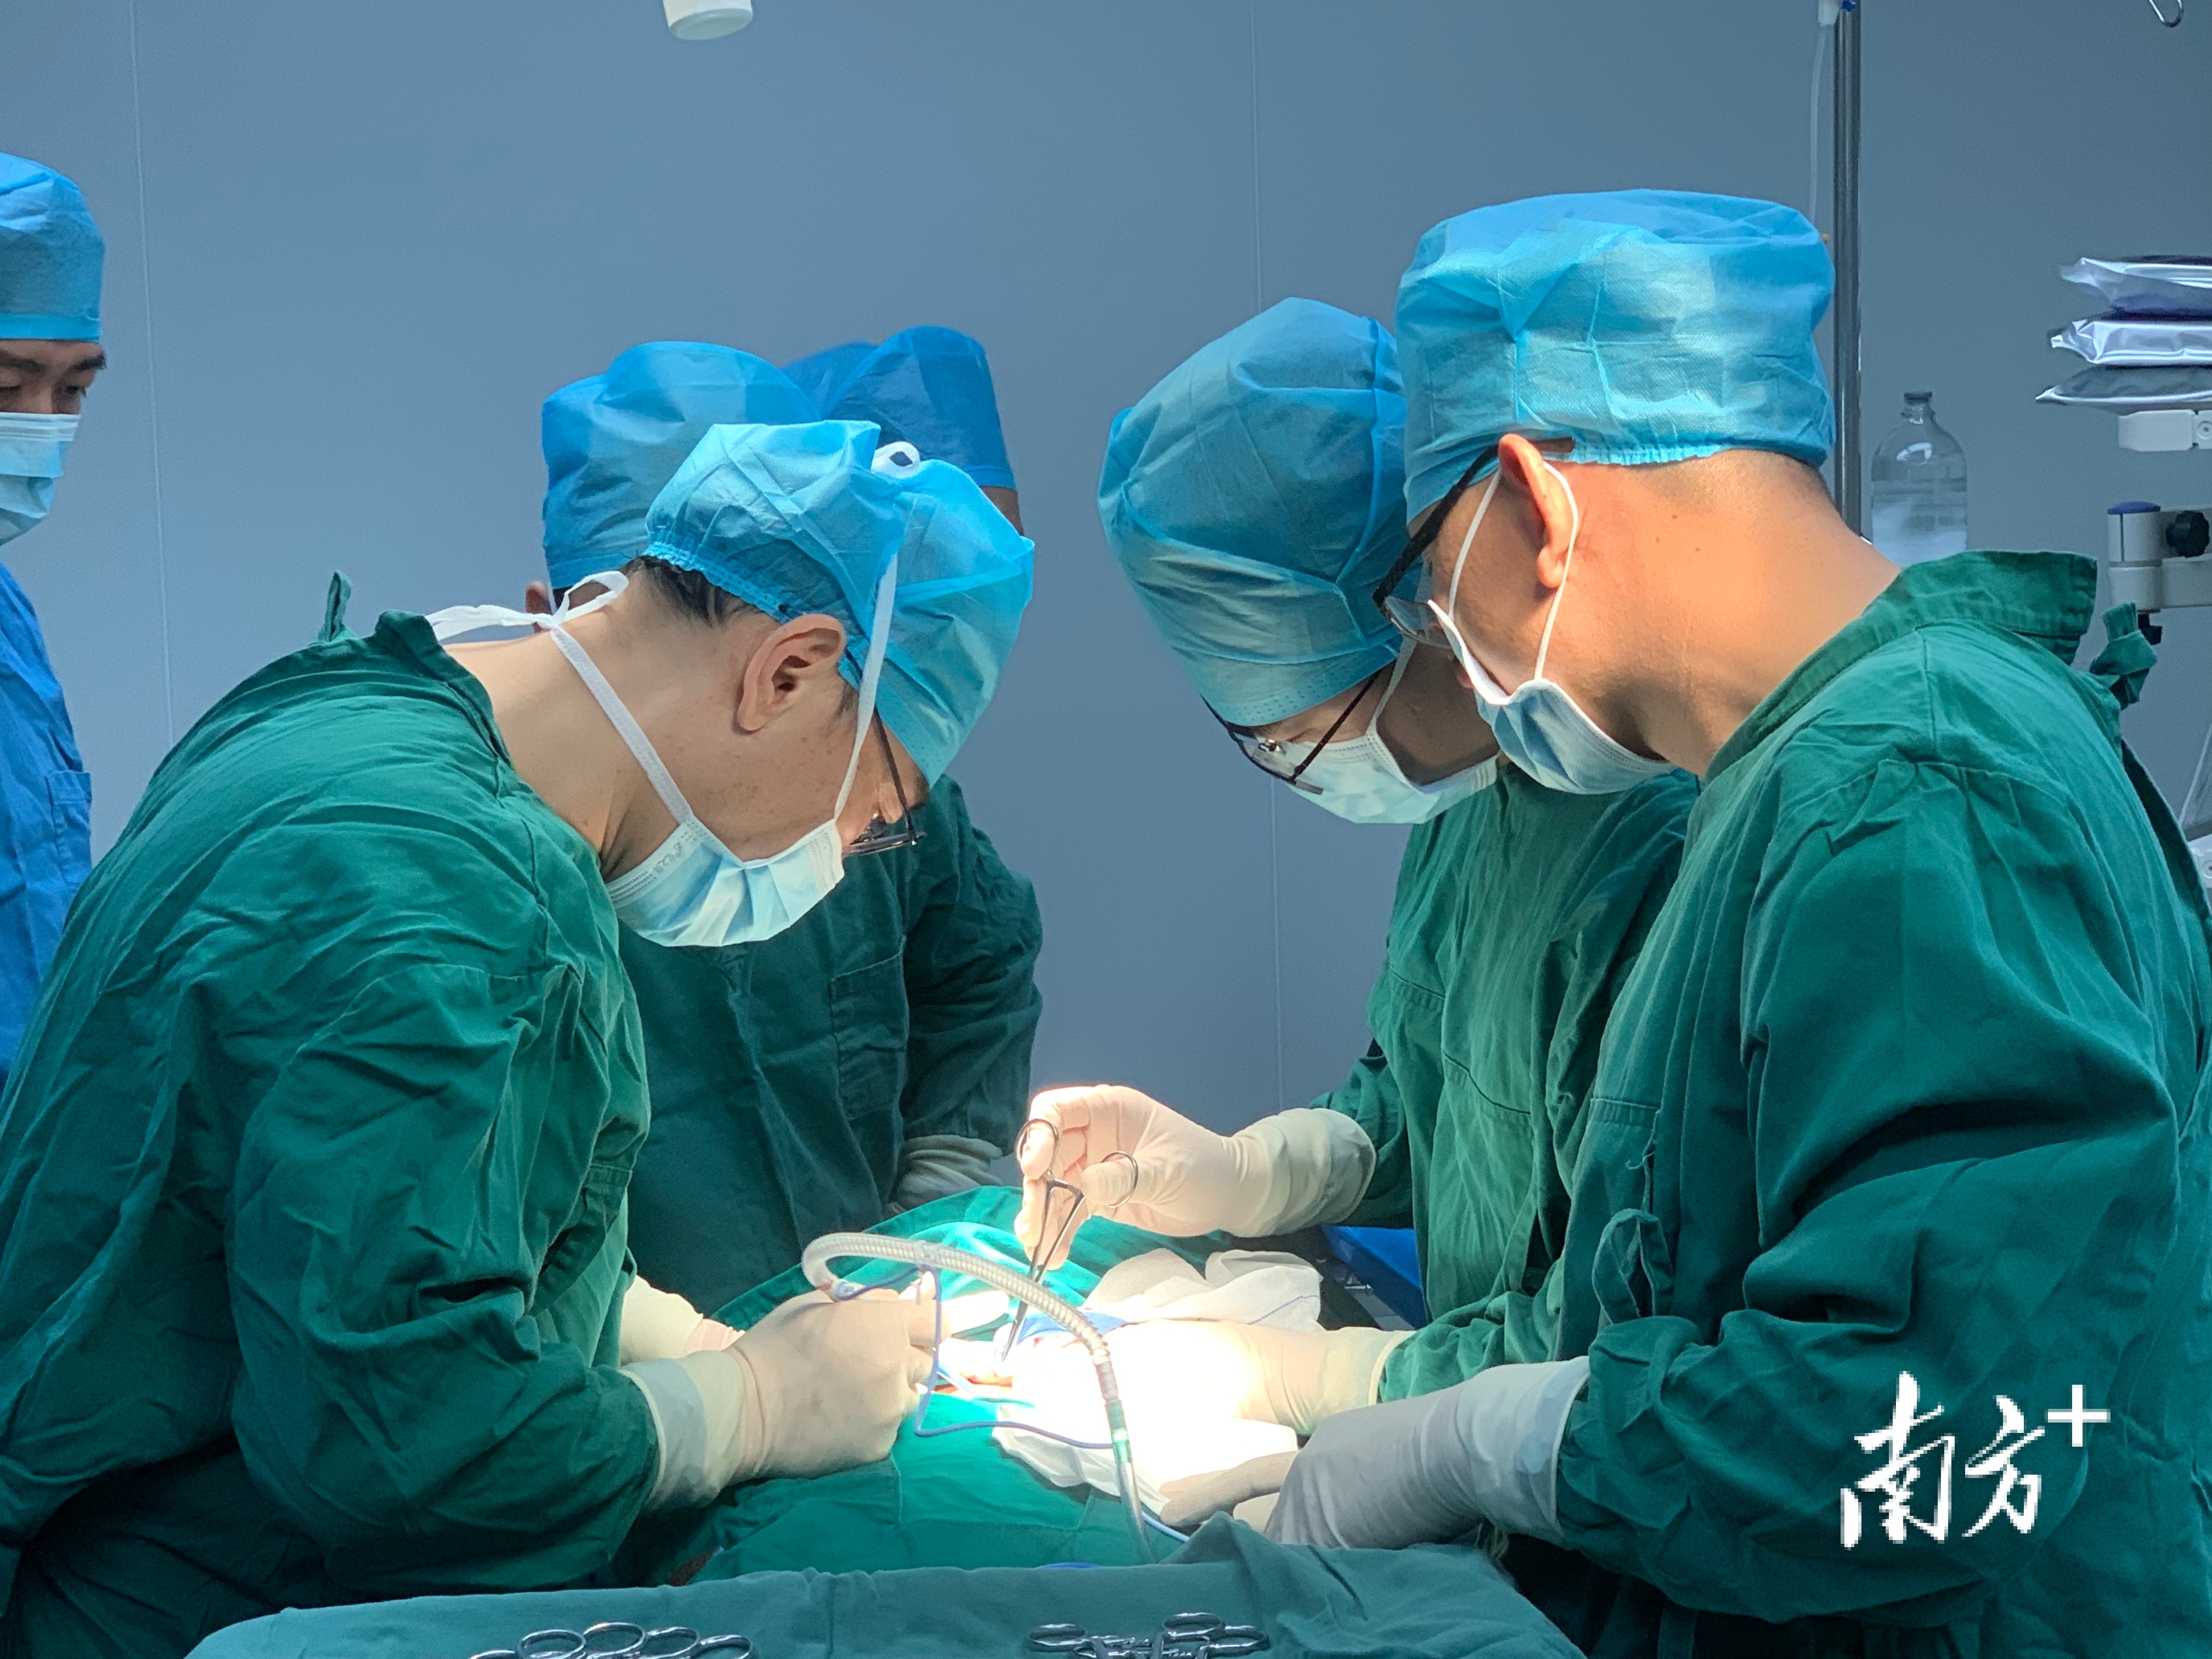 2021年12月20日博罗县医共体总医院外科专家团队赴石湾分院成功为一名患者行左侧甲状腺次全切除术。  